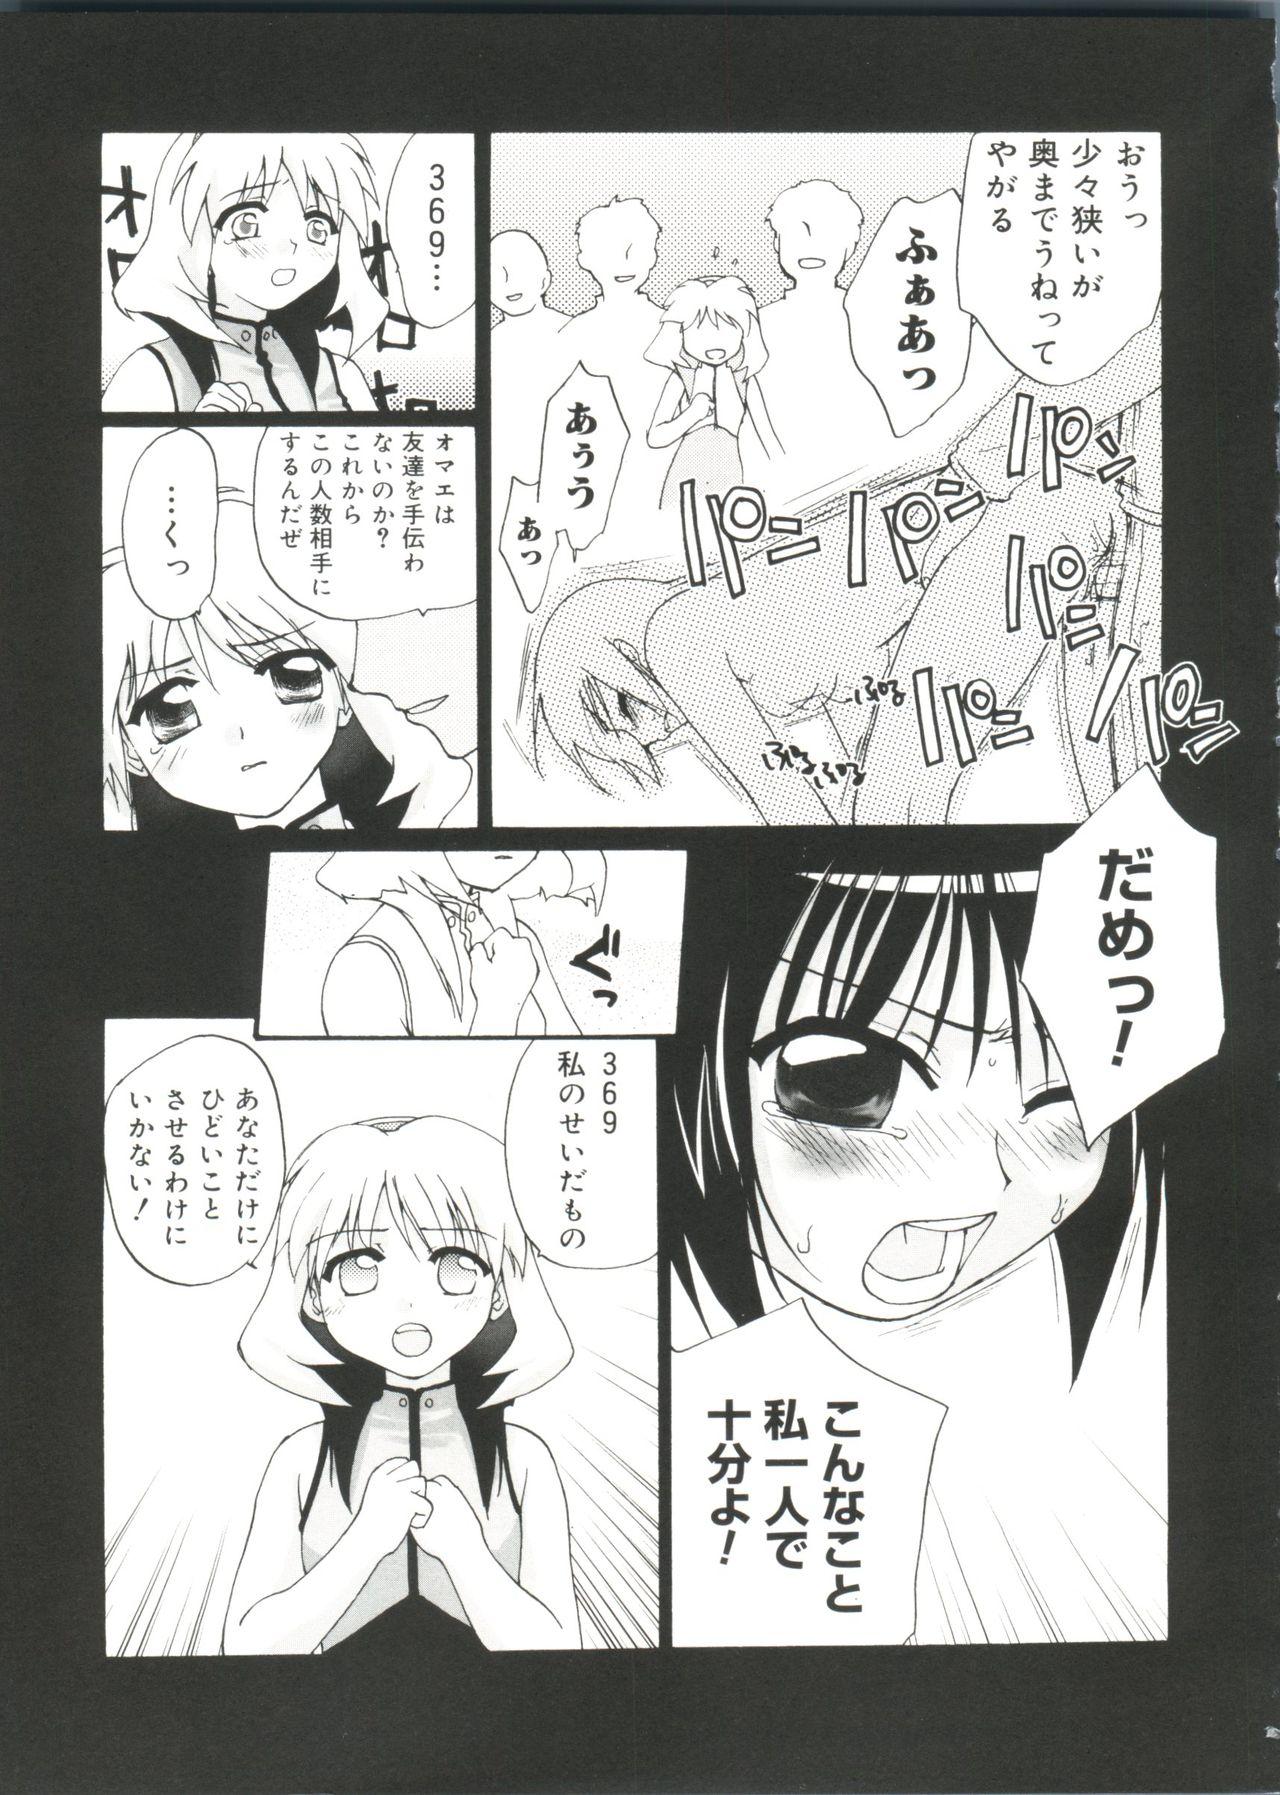 Perfect Teen Love Chara Zensho Vol. 2 - Cardcaptor sakura Sister princess Chobits Tokyo mew mew Mahoromatic Mujer - Page 8